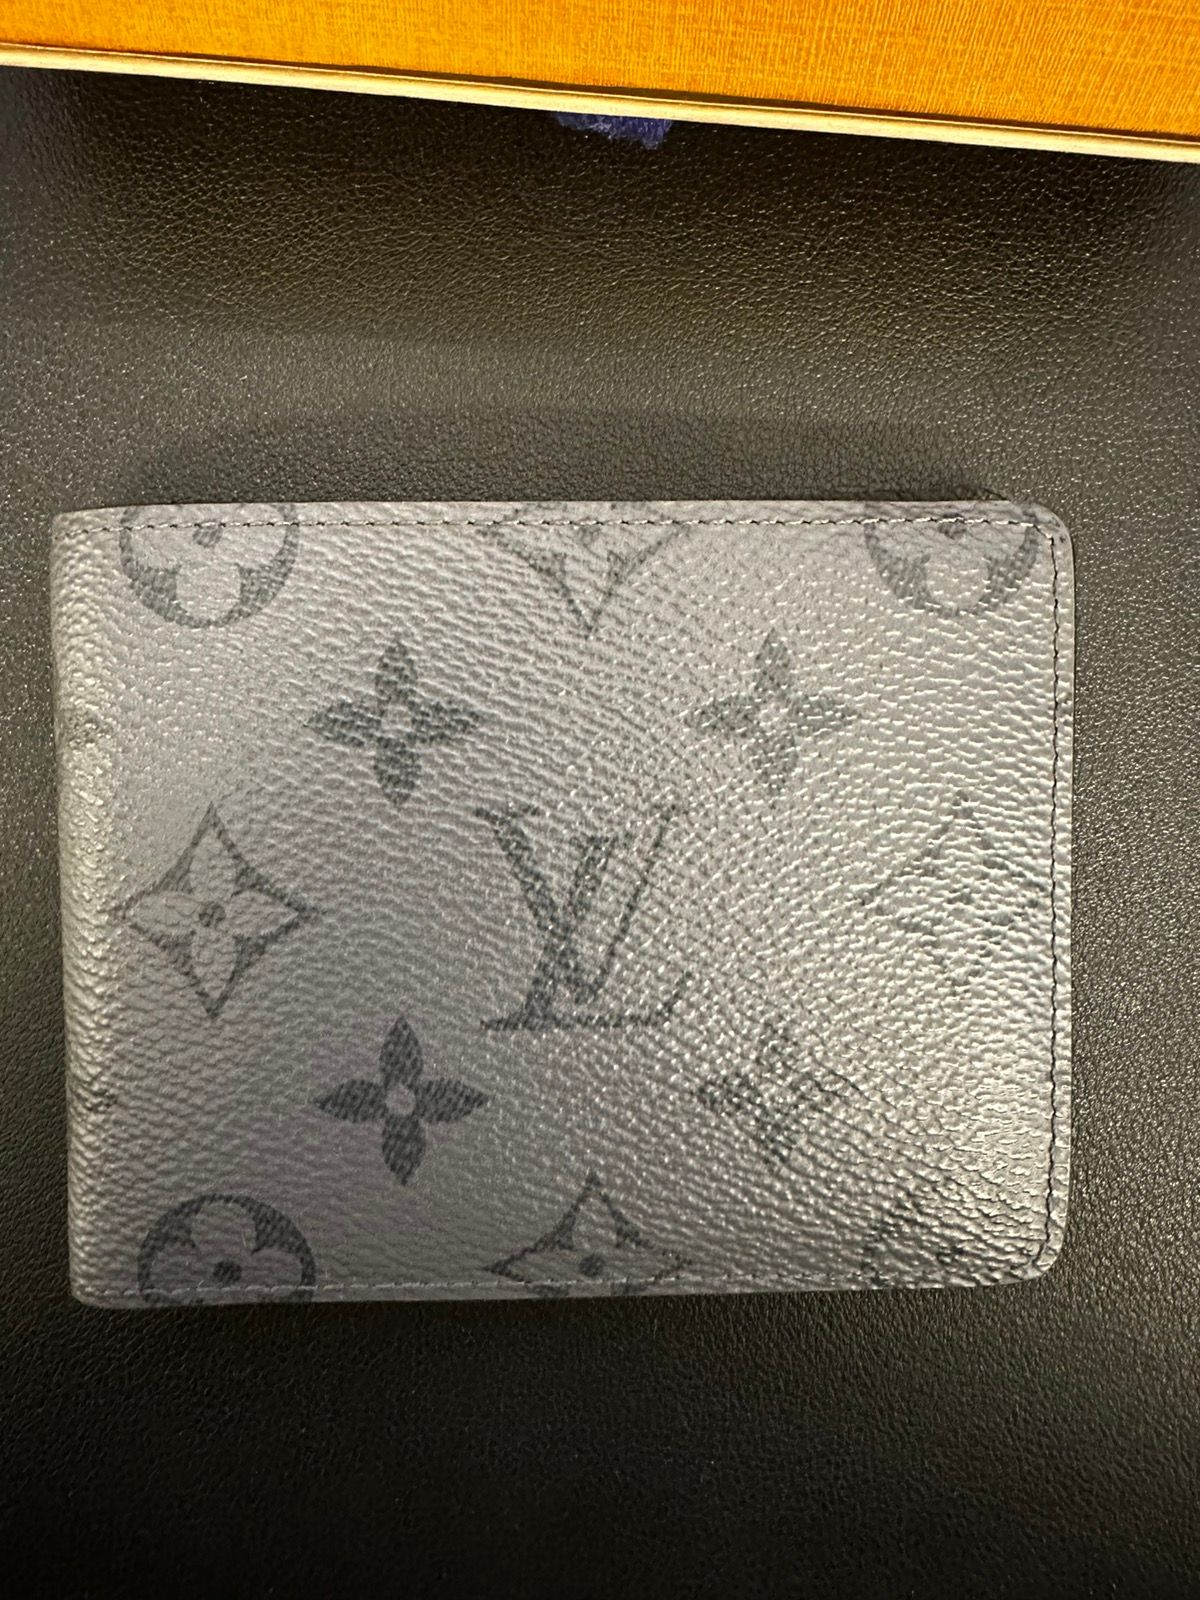 LV Slender wallet eclipse reverse